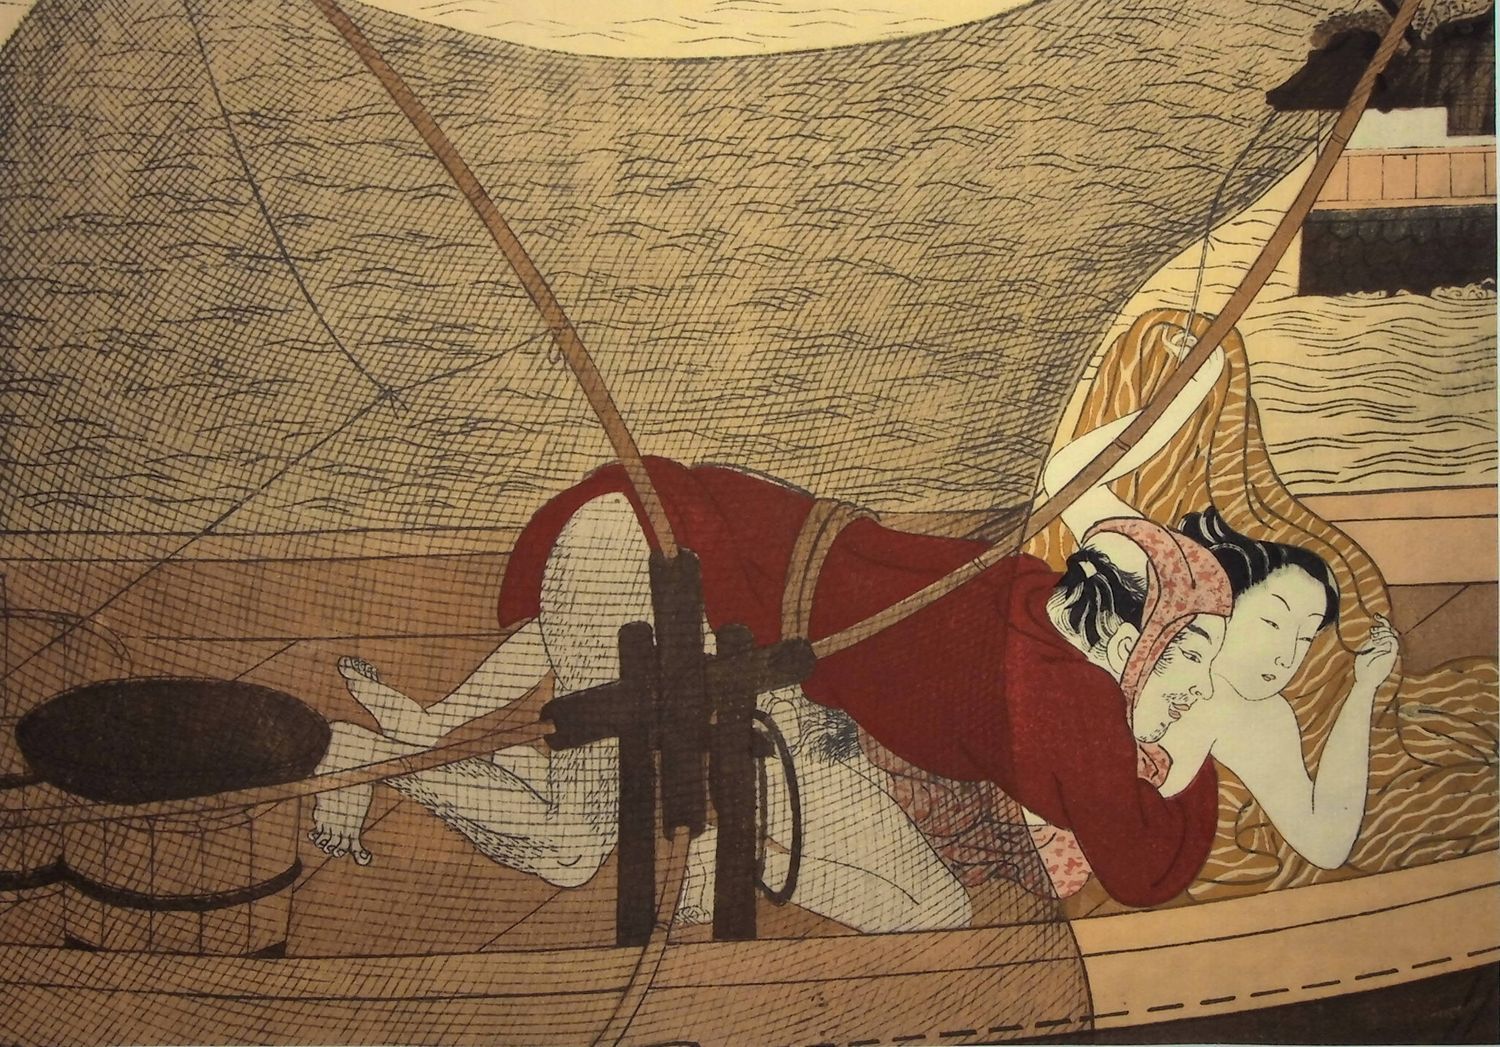 Suzuki HARUNOBU (d’après) Suzuki HARUNOBU (d'après) (1725-1770)

Le batelier

Li&hellip;